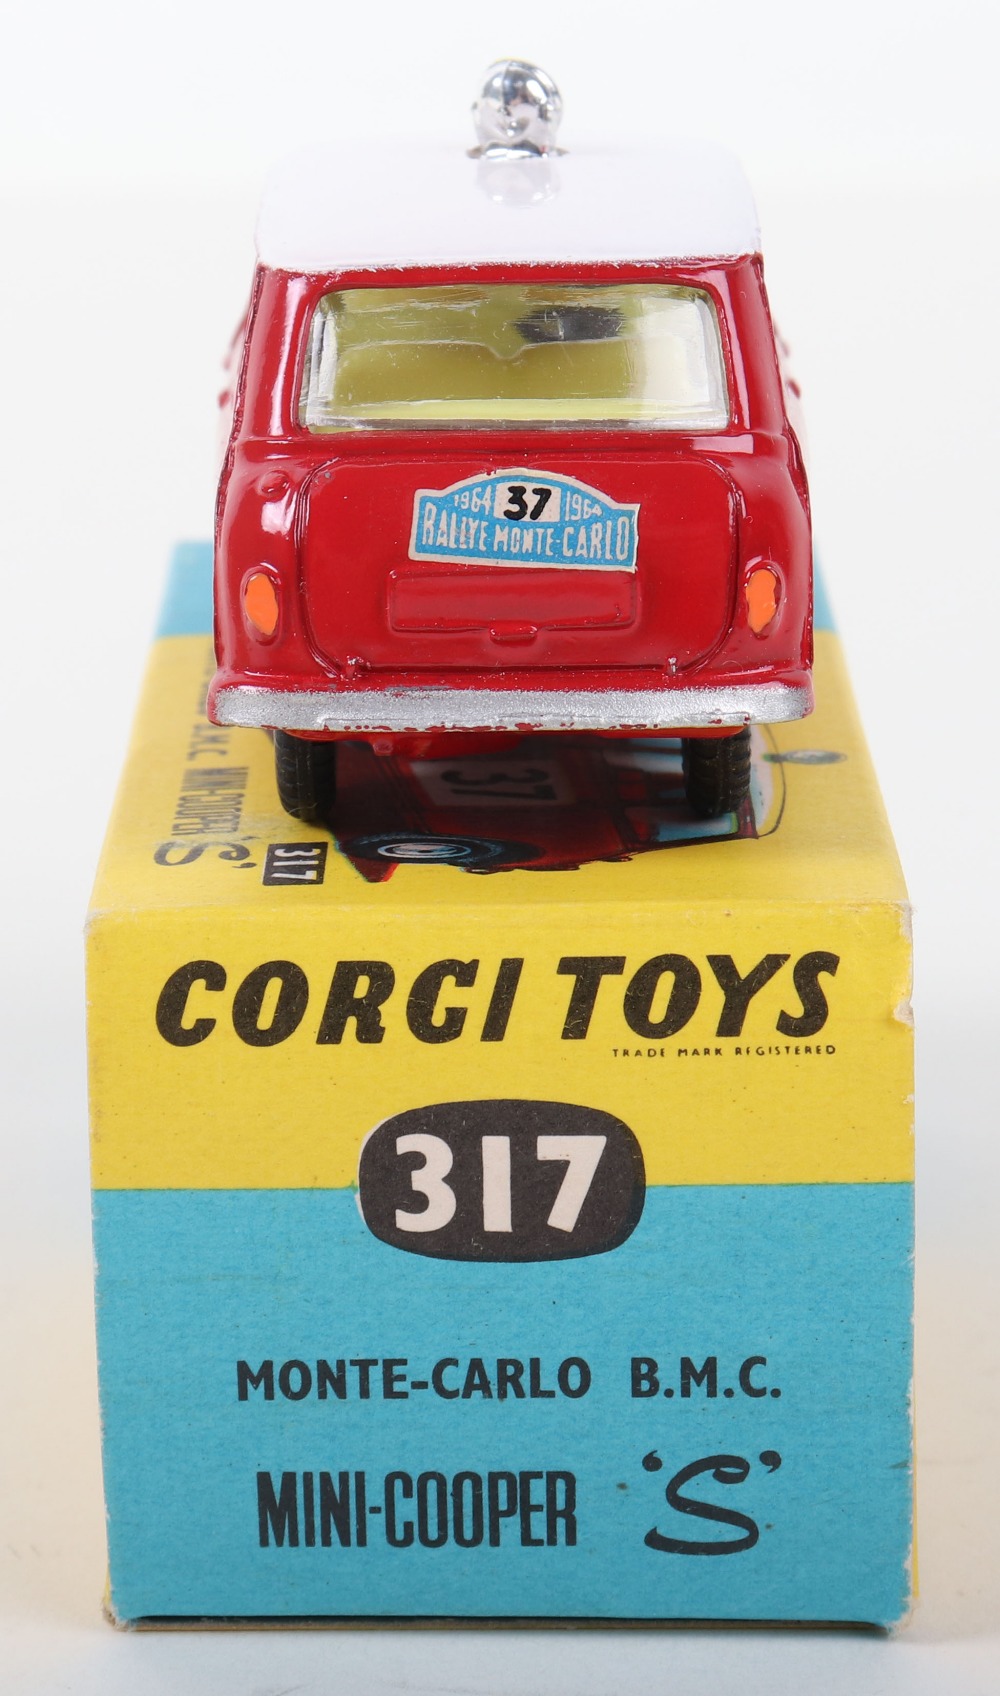 Corgi Toys 317 Monte-Carlo 1964 B.M.C. Mini Copper S - Image 4 of 5